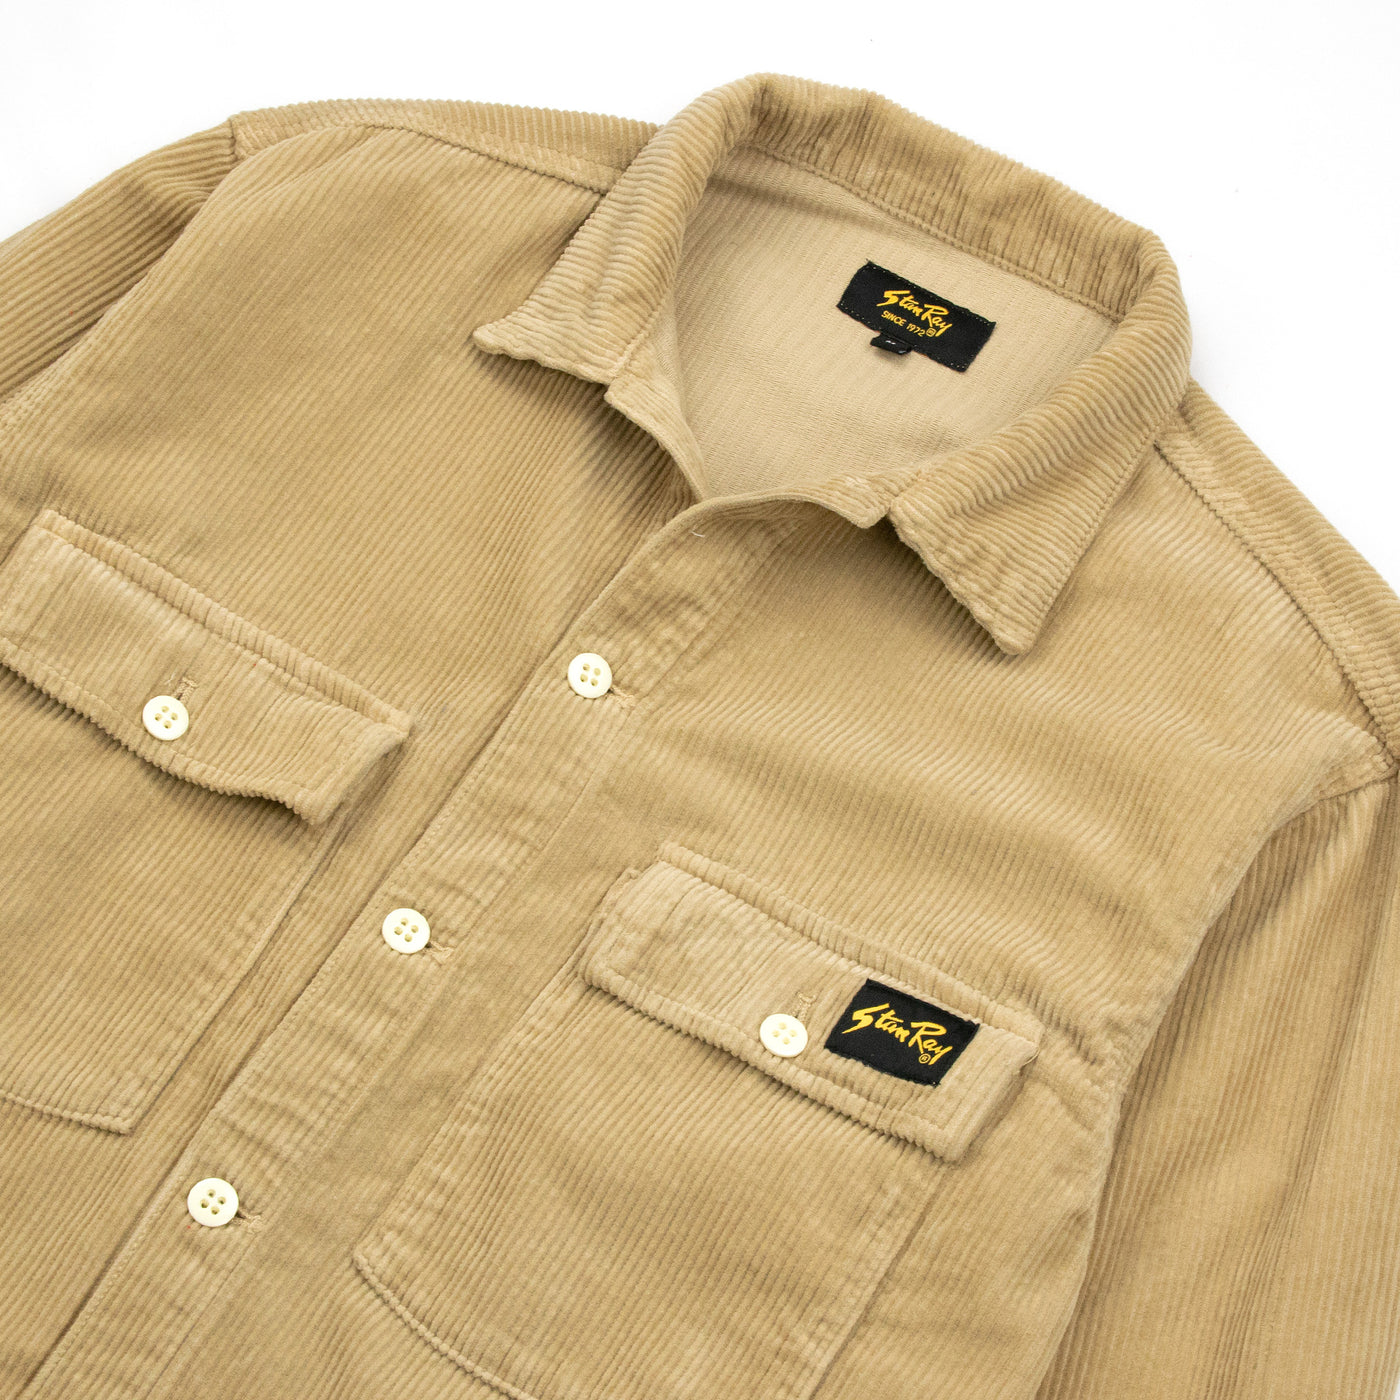 Stan Ray Cotton Corduroy CPO Style Shirt Khaki Front Detail